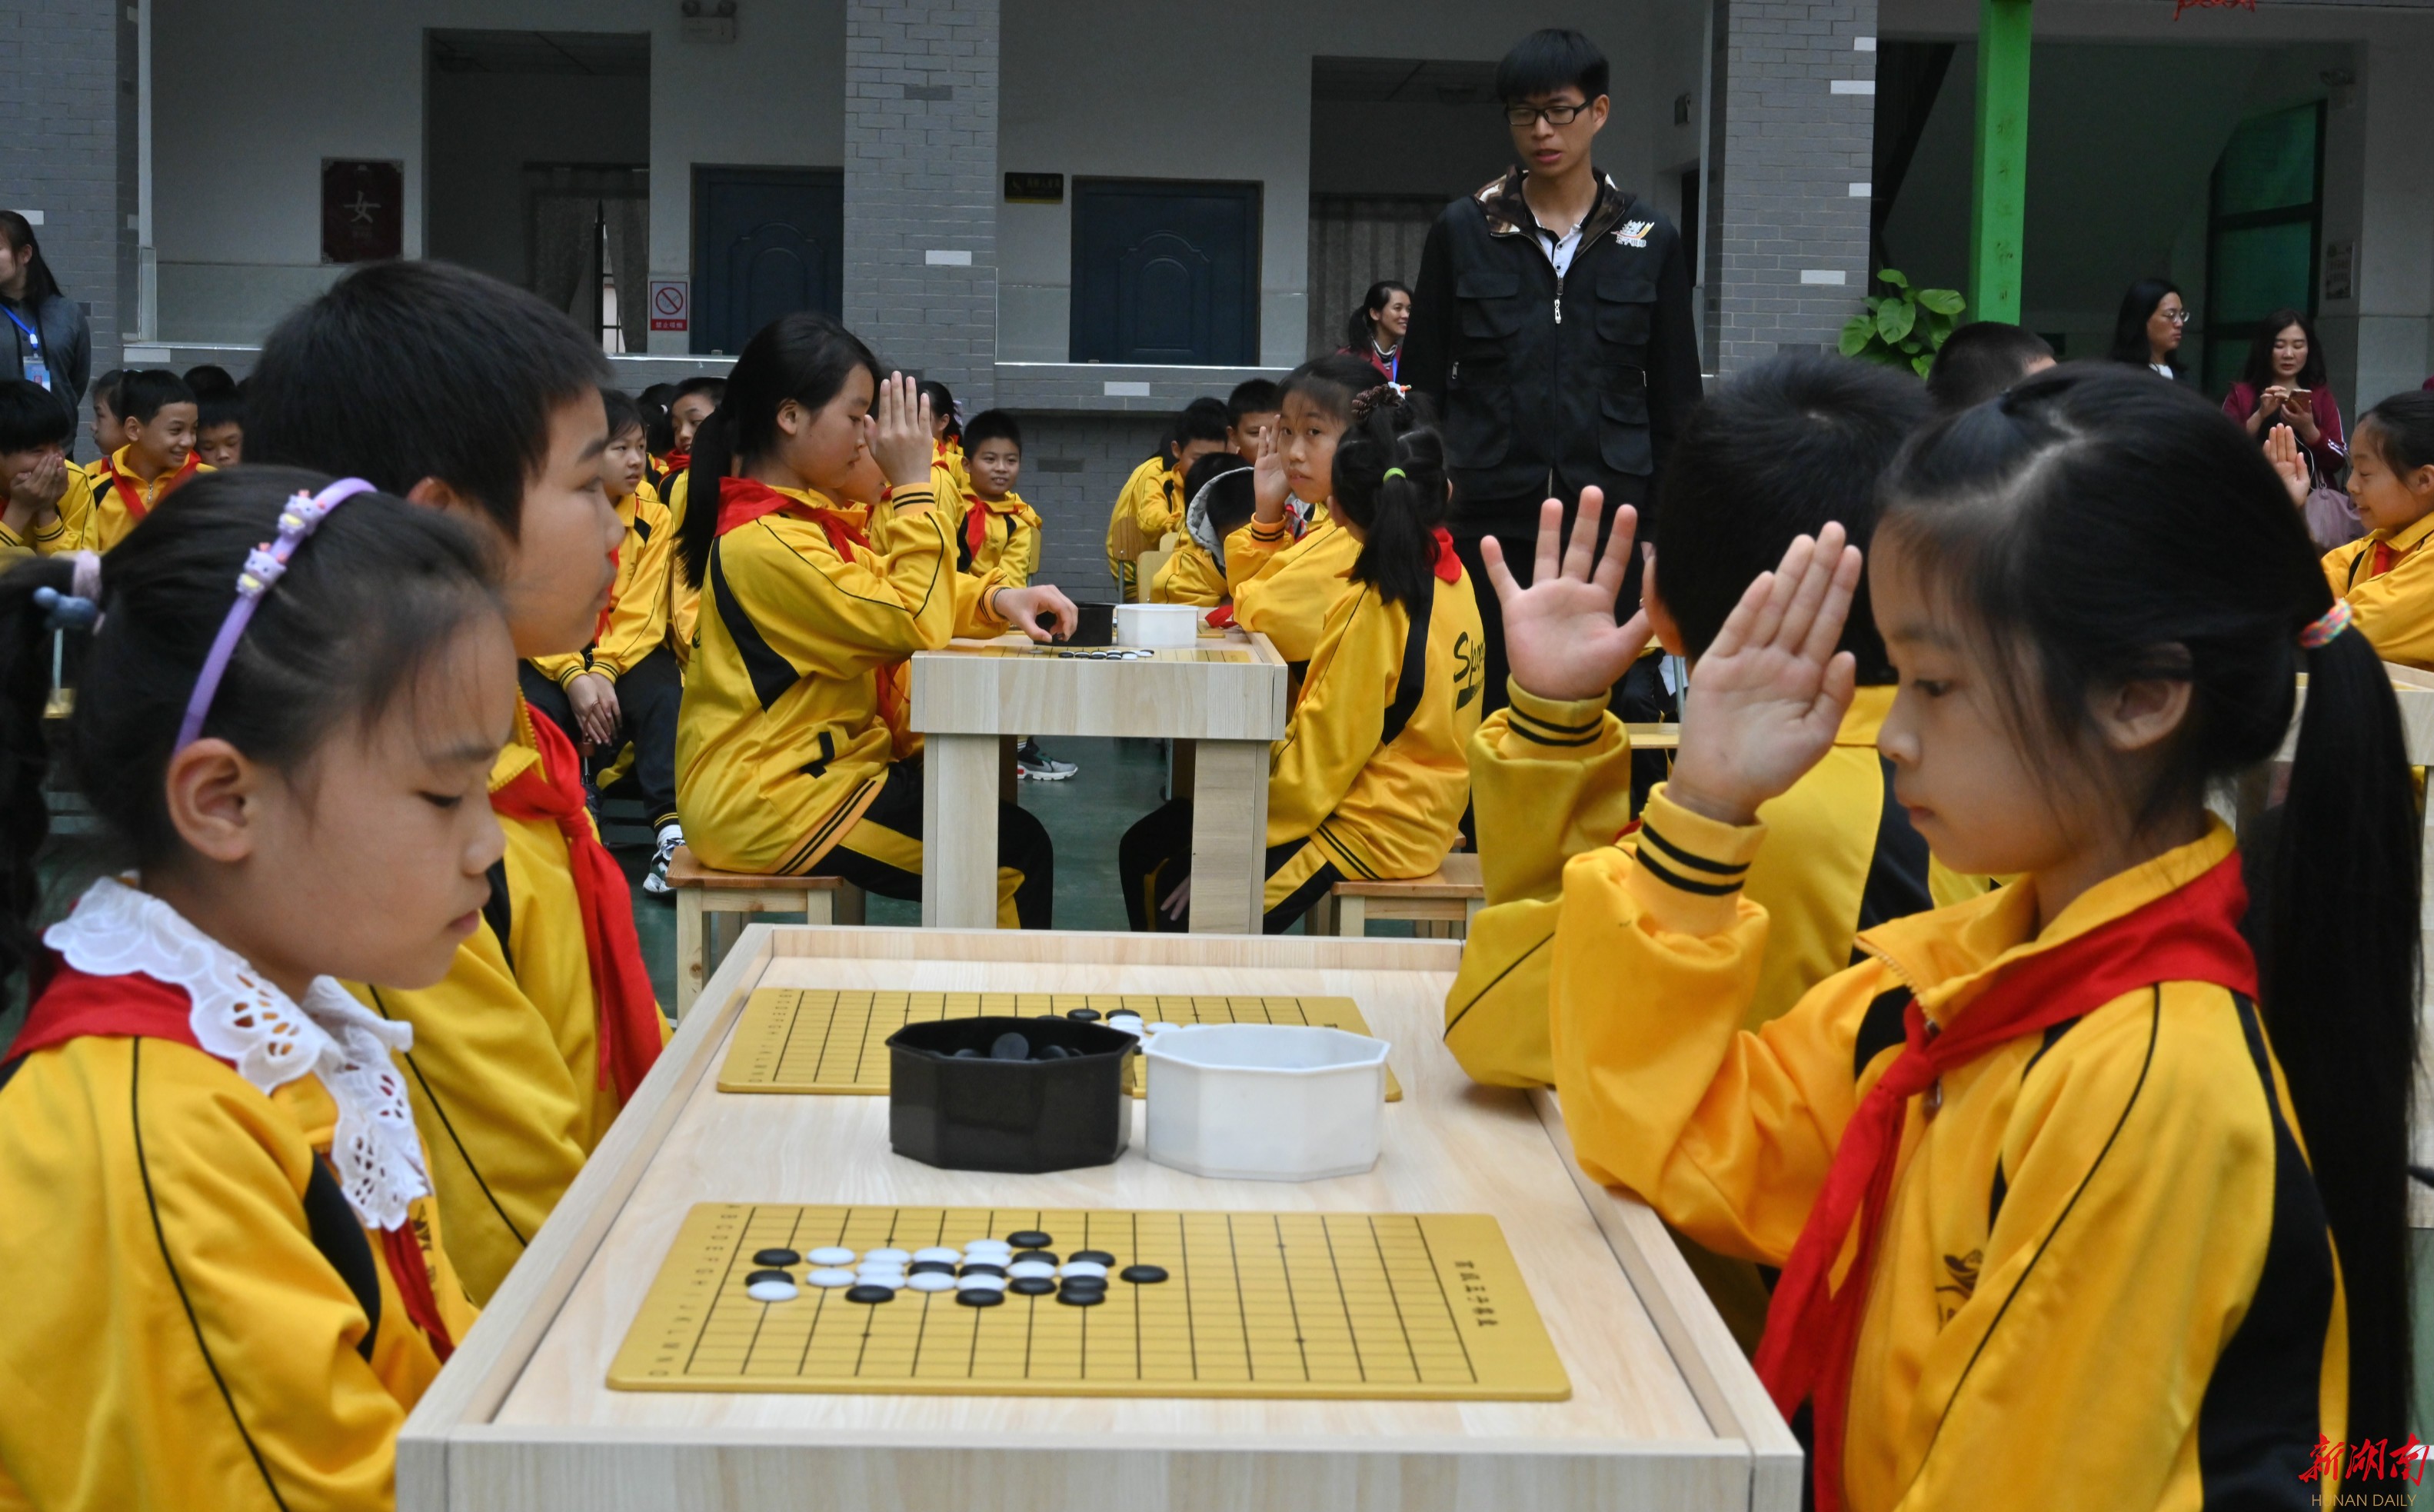 五子棋规则大班活动区布置